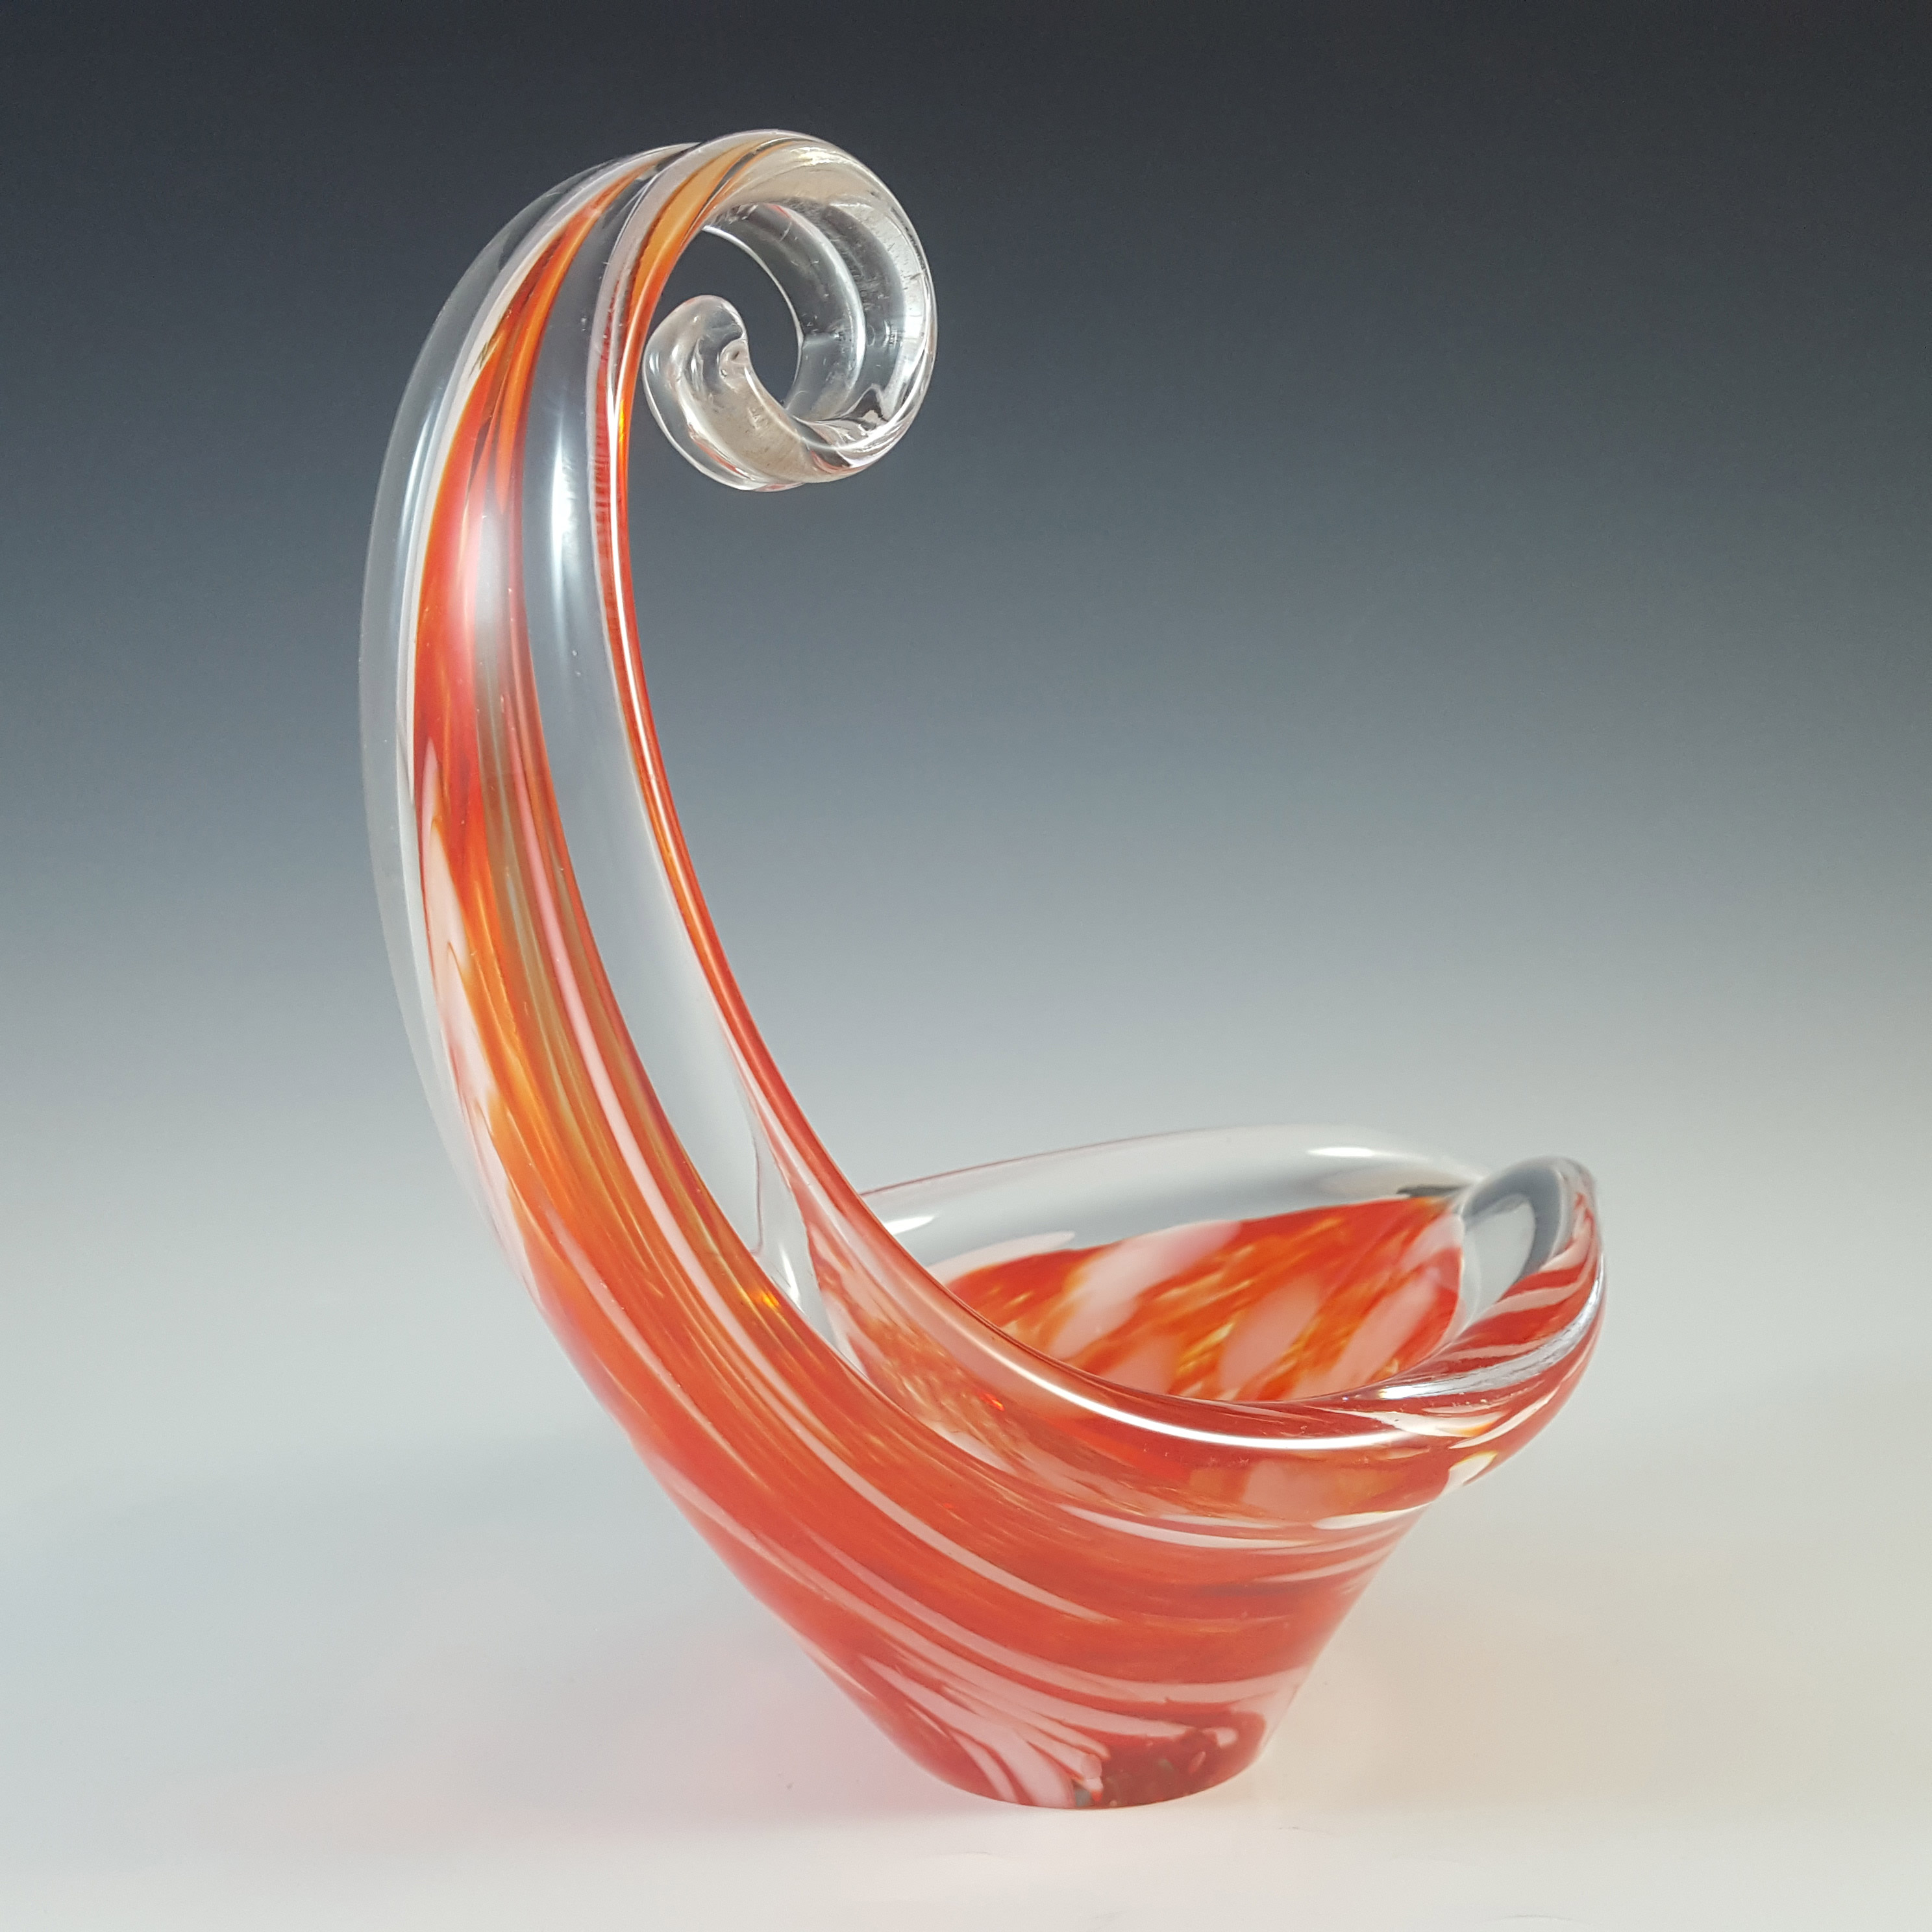 Viartec Murano Style Orange & White Spanish Glass Sculpture Bowl - Click Image to Close